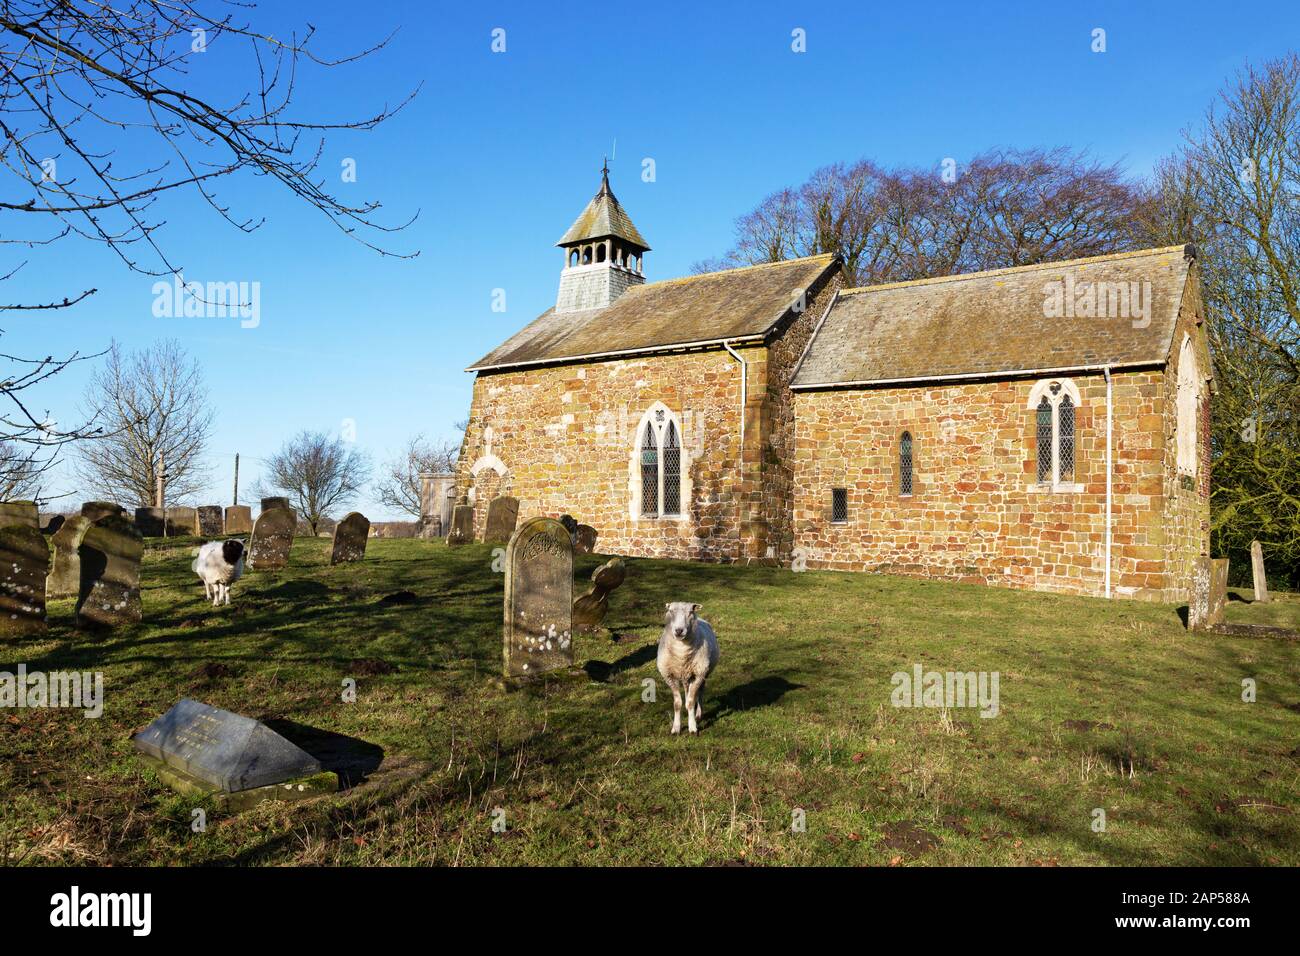 Alte englische Kirchen; St Peters Church, Lusby Lincoln, eine normannische Kirche aus dem 11. Jahrhundert mit Schafweiden im Kirchenhof, Lusby, Lincoln, UK Stockfoto